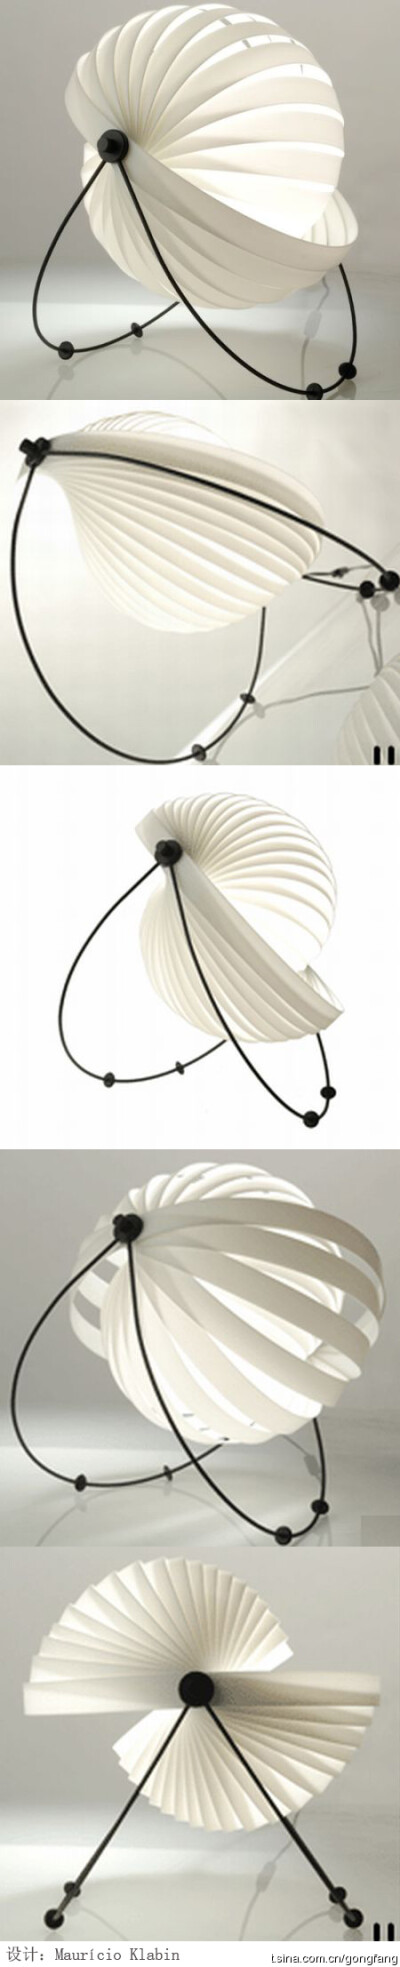 创意贝壳灯——它的设计者是Maurício Klabin。灯罩由简单的条形塑料弯曲而成，底座由金属支架撑起，可以自由调整灯光的朝向，现已于纽约现代艺术博物馆中收藏